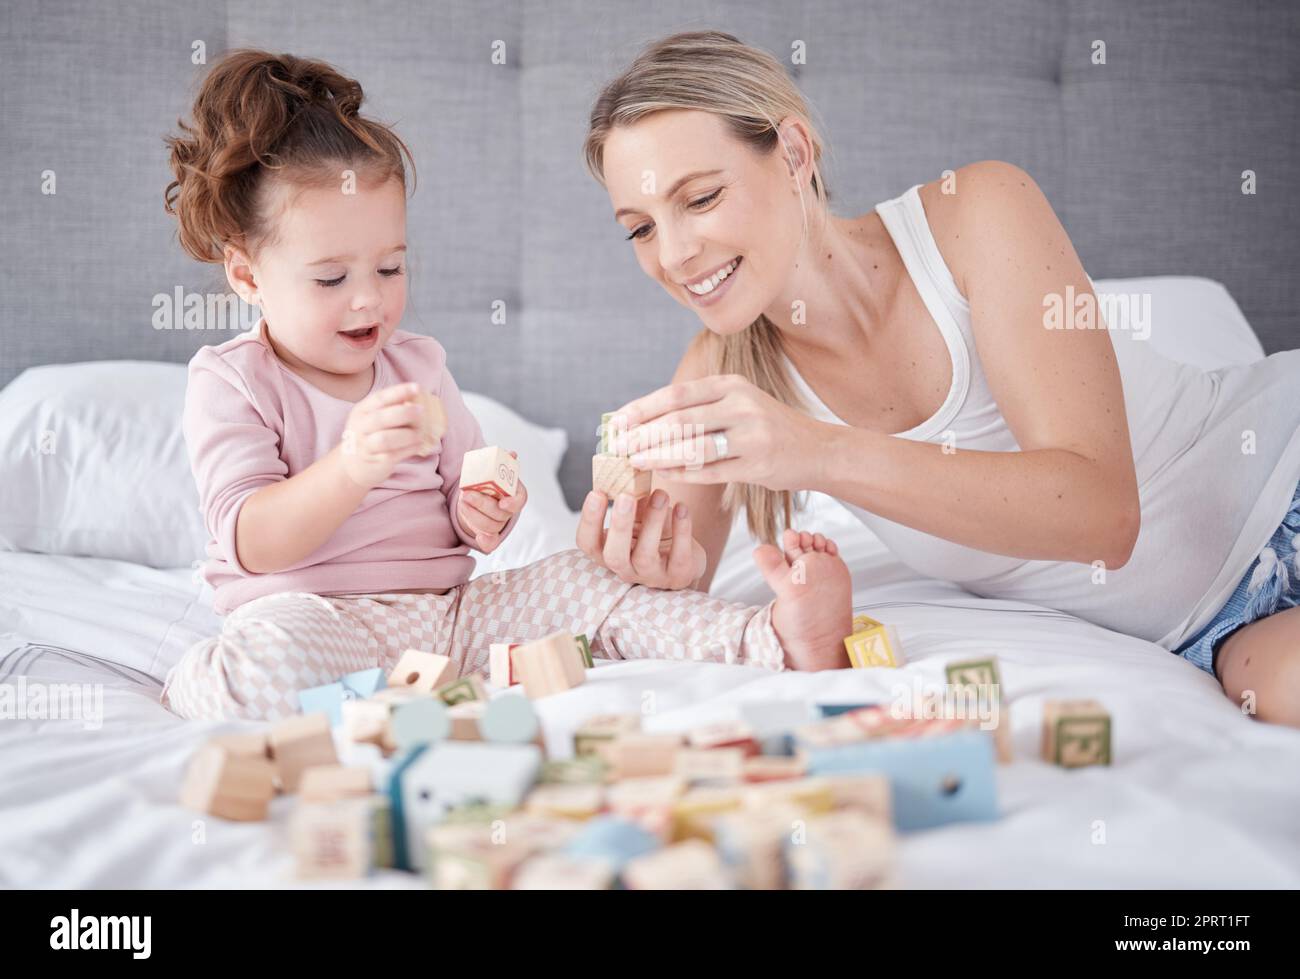 Bett, glückliche Mutter und Baby mit Spielzeug spielen zusammen mit Bausteinen für die Alphabeterziehung im Schlafzimmer. Familienliebe, Kinderentwicklung und Spaß beim Lernen kleiner Mädchen oder Kinder, die eine Beziehung zu ihrer mutter aufbauen Stockfoto